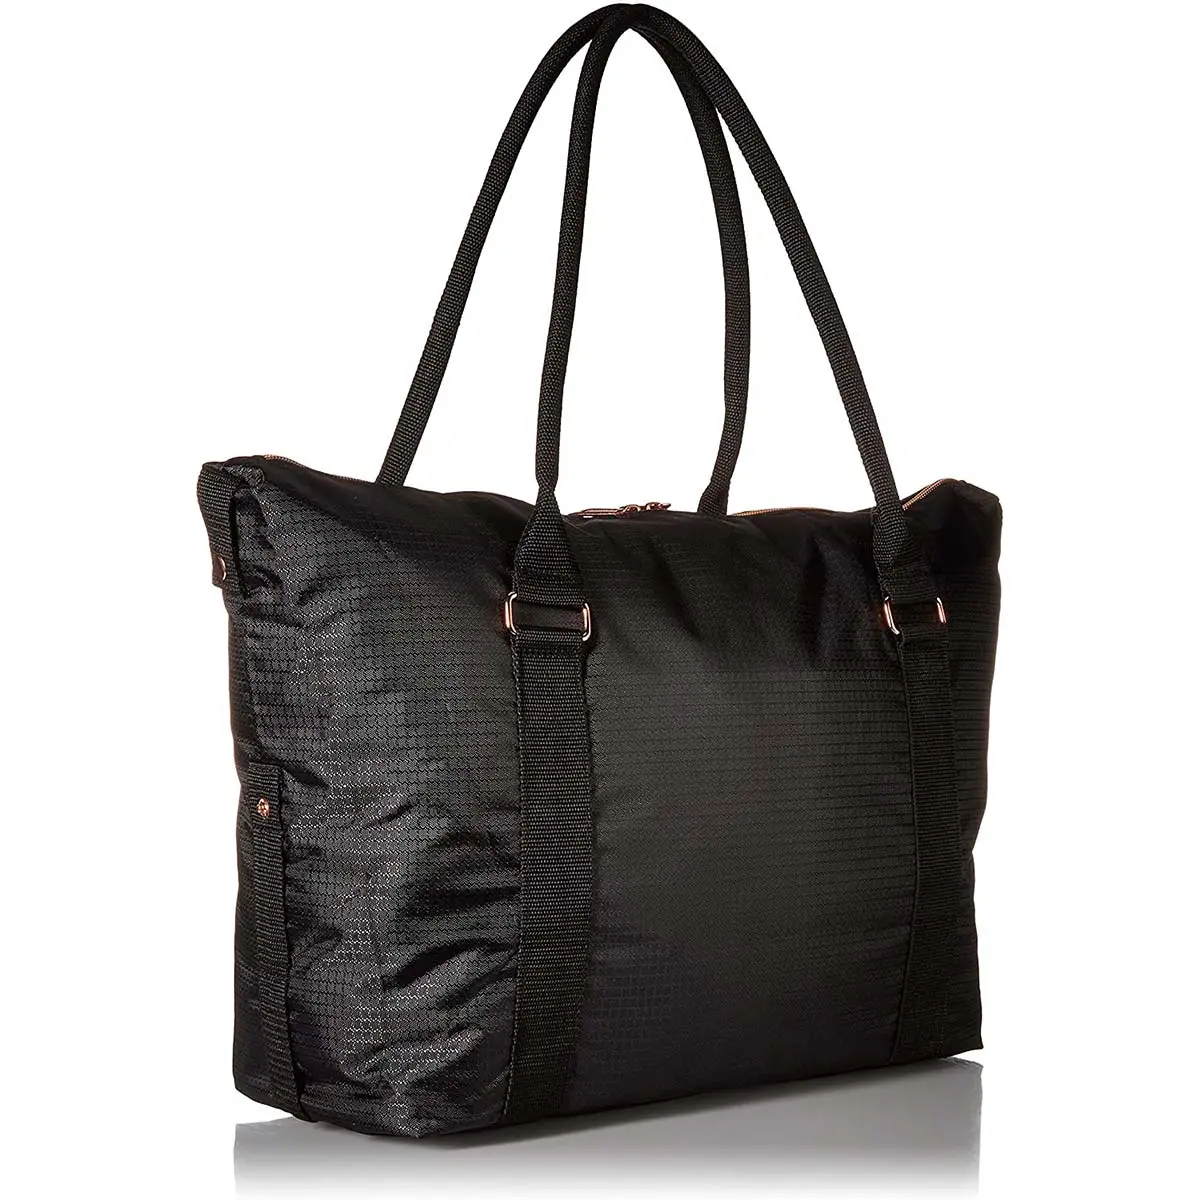 Женская модная сумка-тоут Cordura по низкой цене, элегантный дизайн, портативная женская сумка, оптовая продажа, сумка под заказ от поставщика